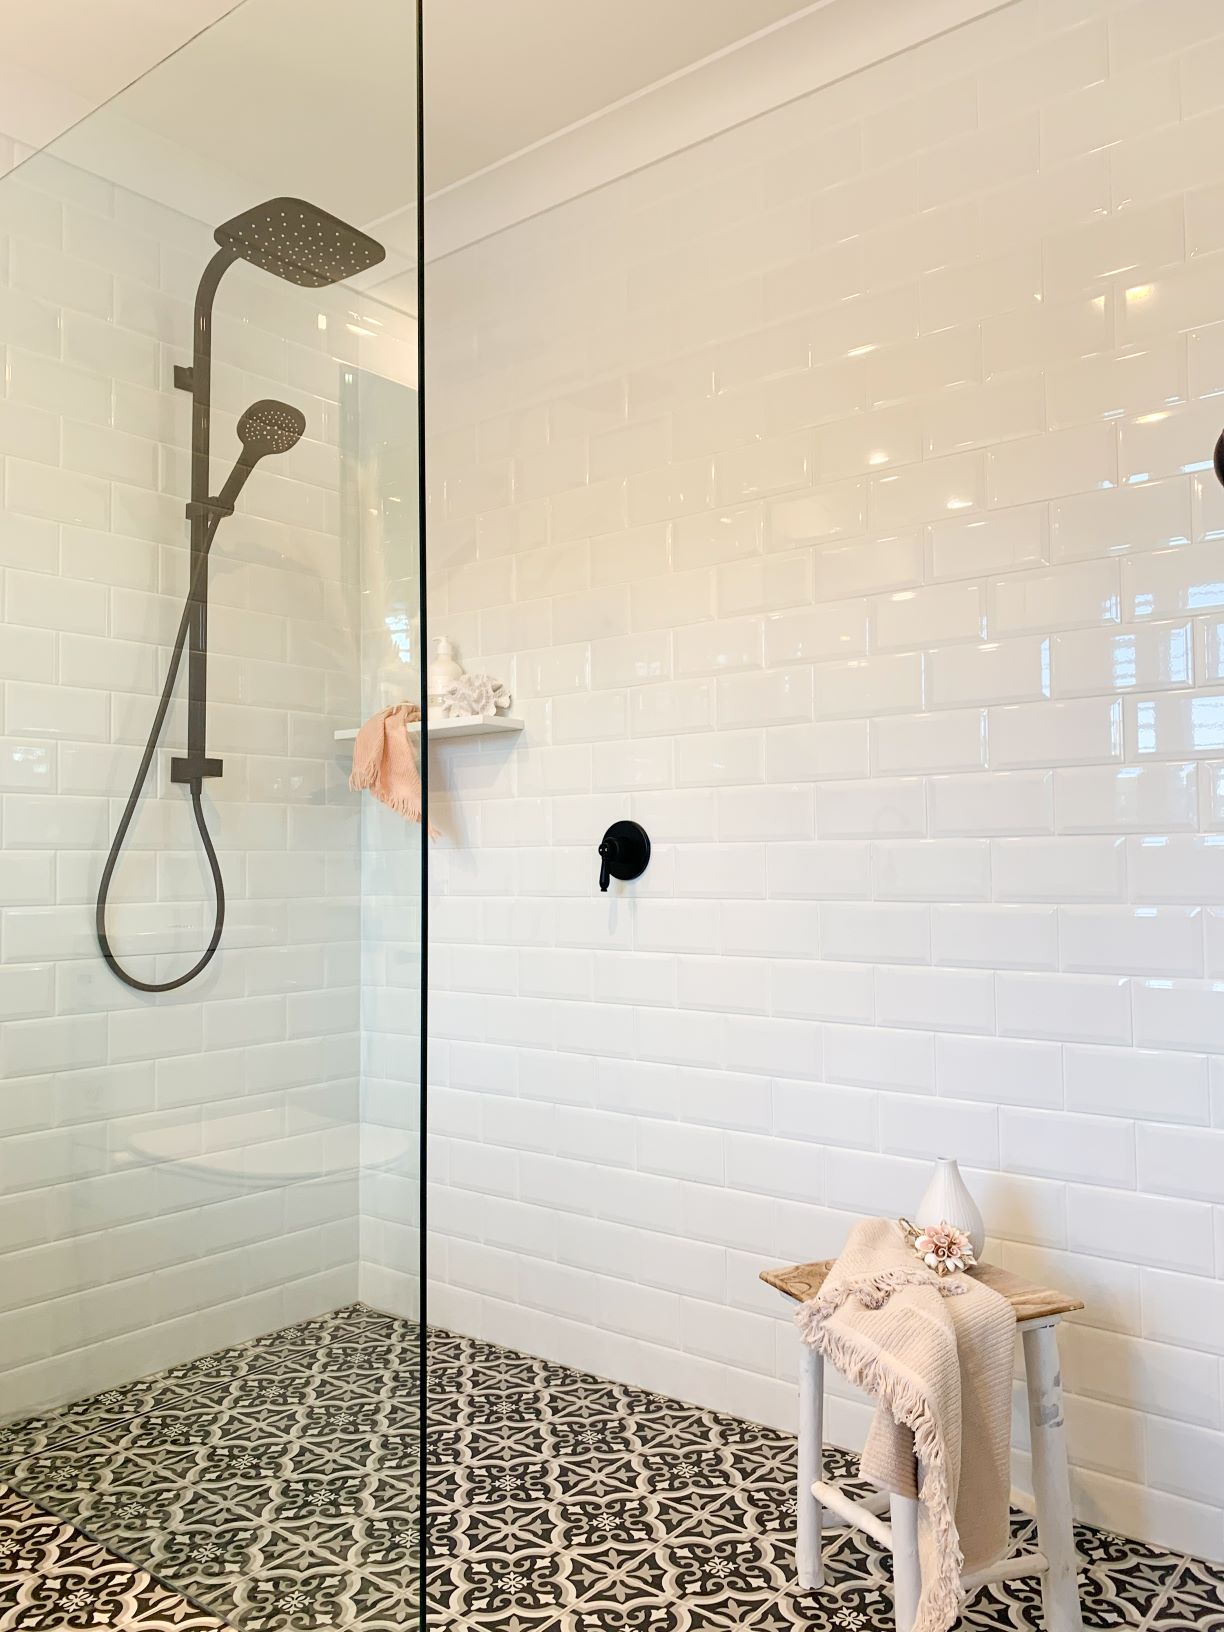 ascot ensuite rain shower shower screen black and white floor tiles white wall tiles